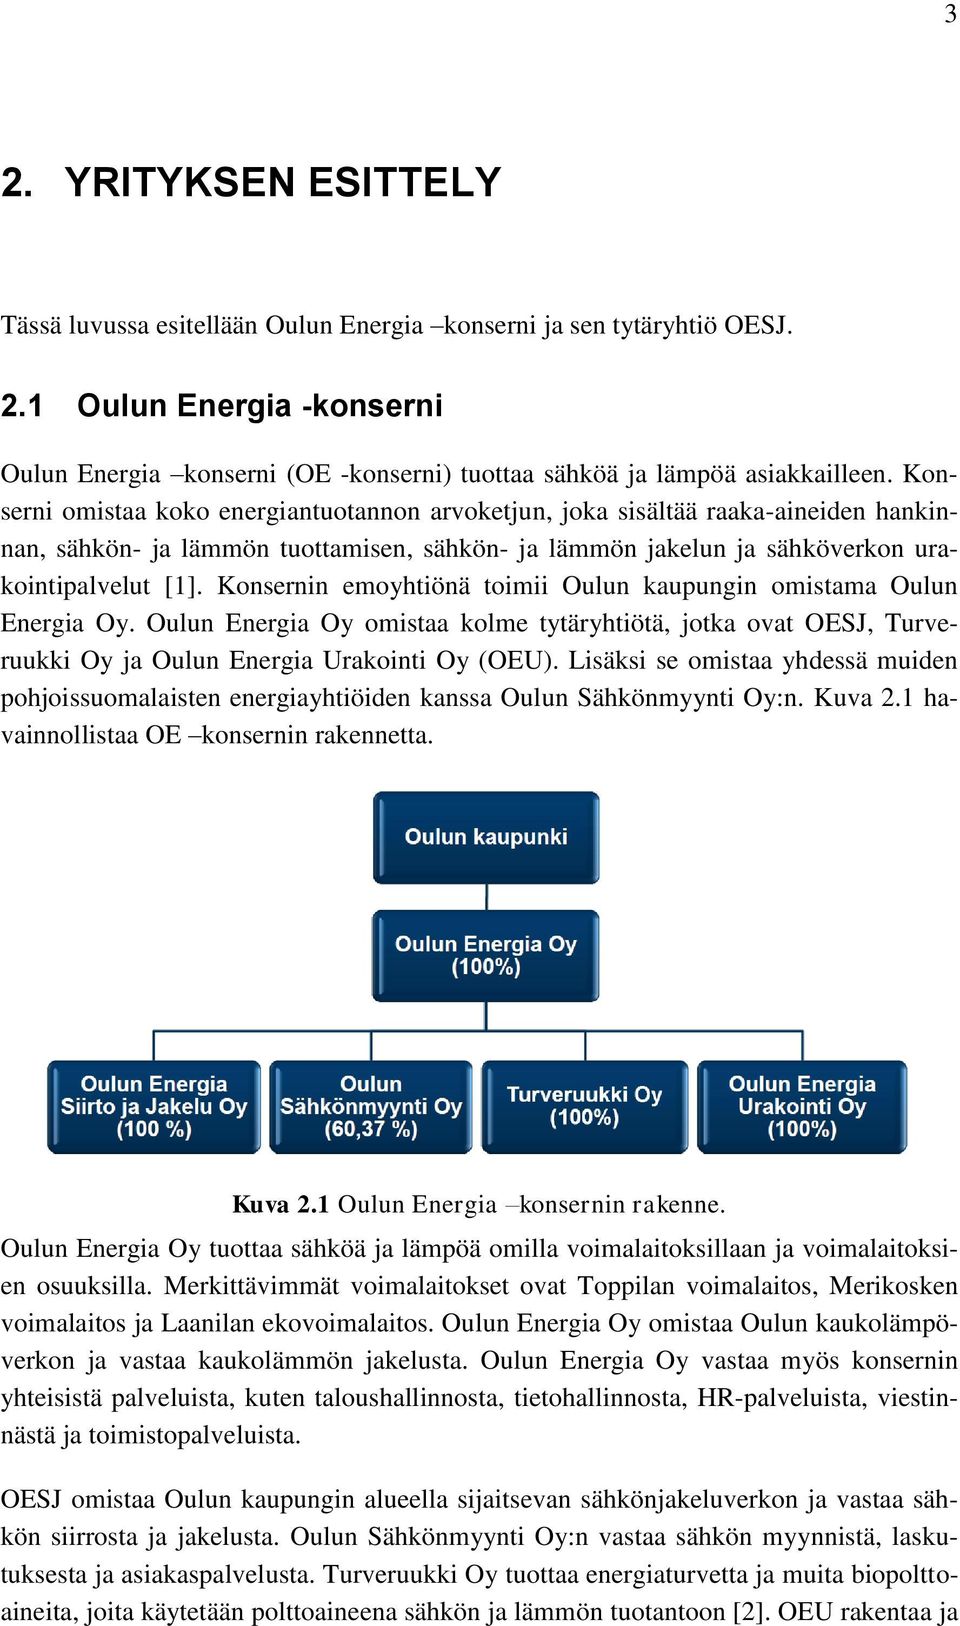 Konsernin emoyhtiönä toimii Oulun kaupungin omistama Oulun Energia Oy. Oulun Energia Oy omistaa kolme tytäryhtiötä, jotka ovat OESJ, Turveruukki Oy ja Oulun Energia Urakointi Oy (OEU).